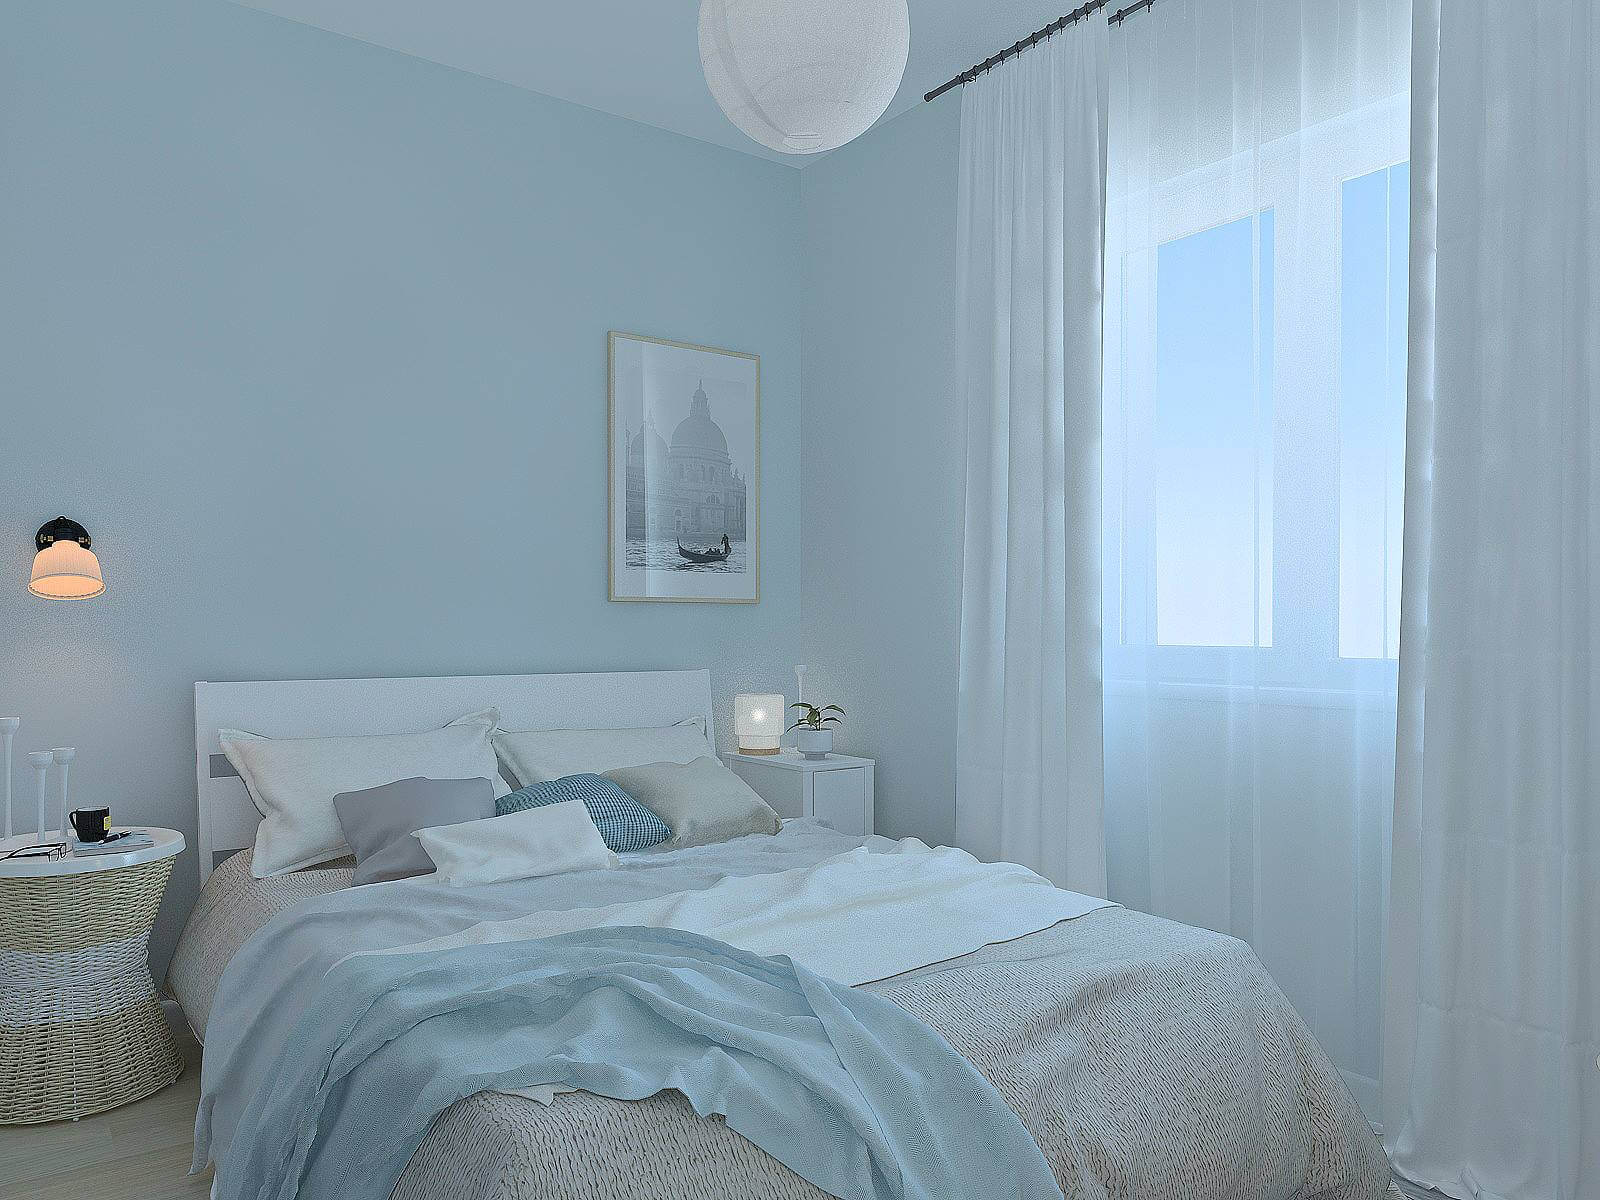 Phòng ngủ màu xanh dương nhạt kết với hợp màu trắng nhẹ nhàng, trang nhã